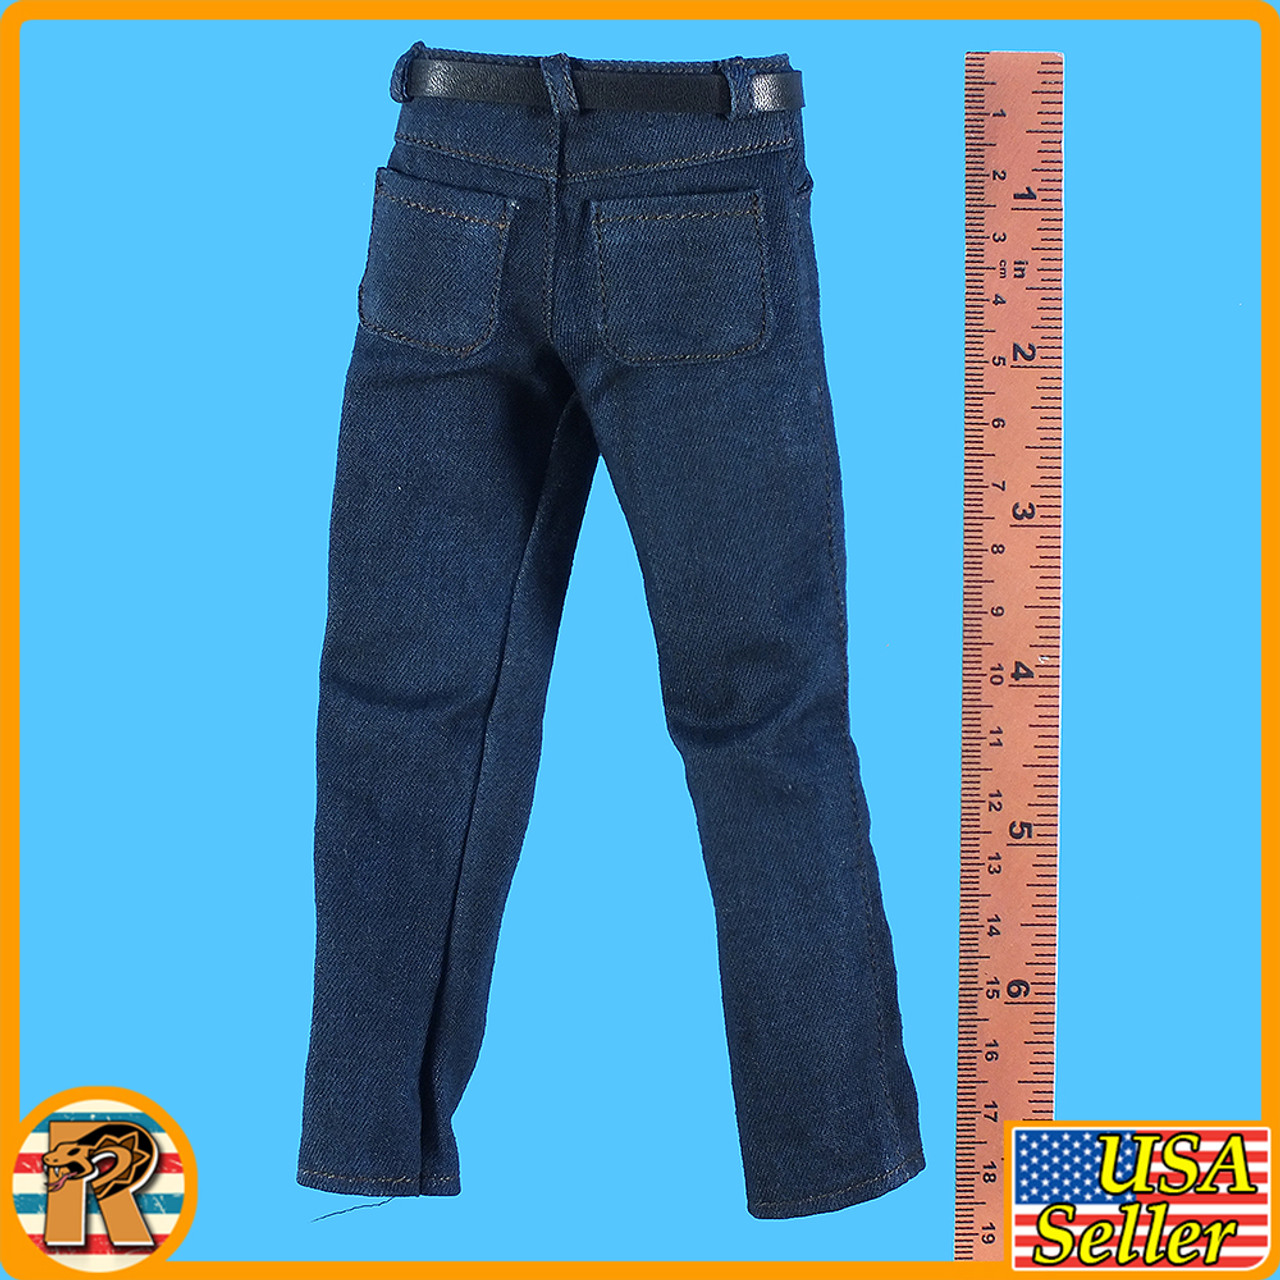 Joe Last Survivor - Blue Jeans Pants - 1/6 Scale -